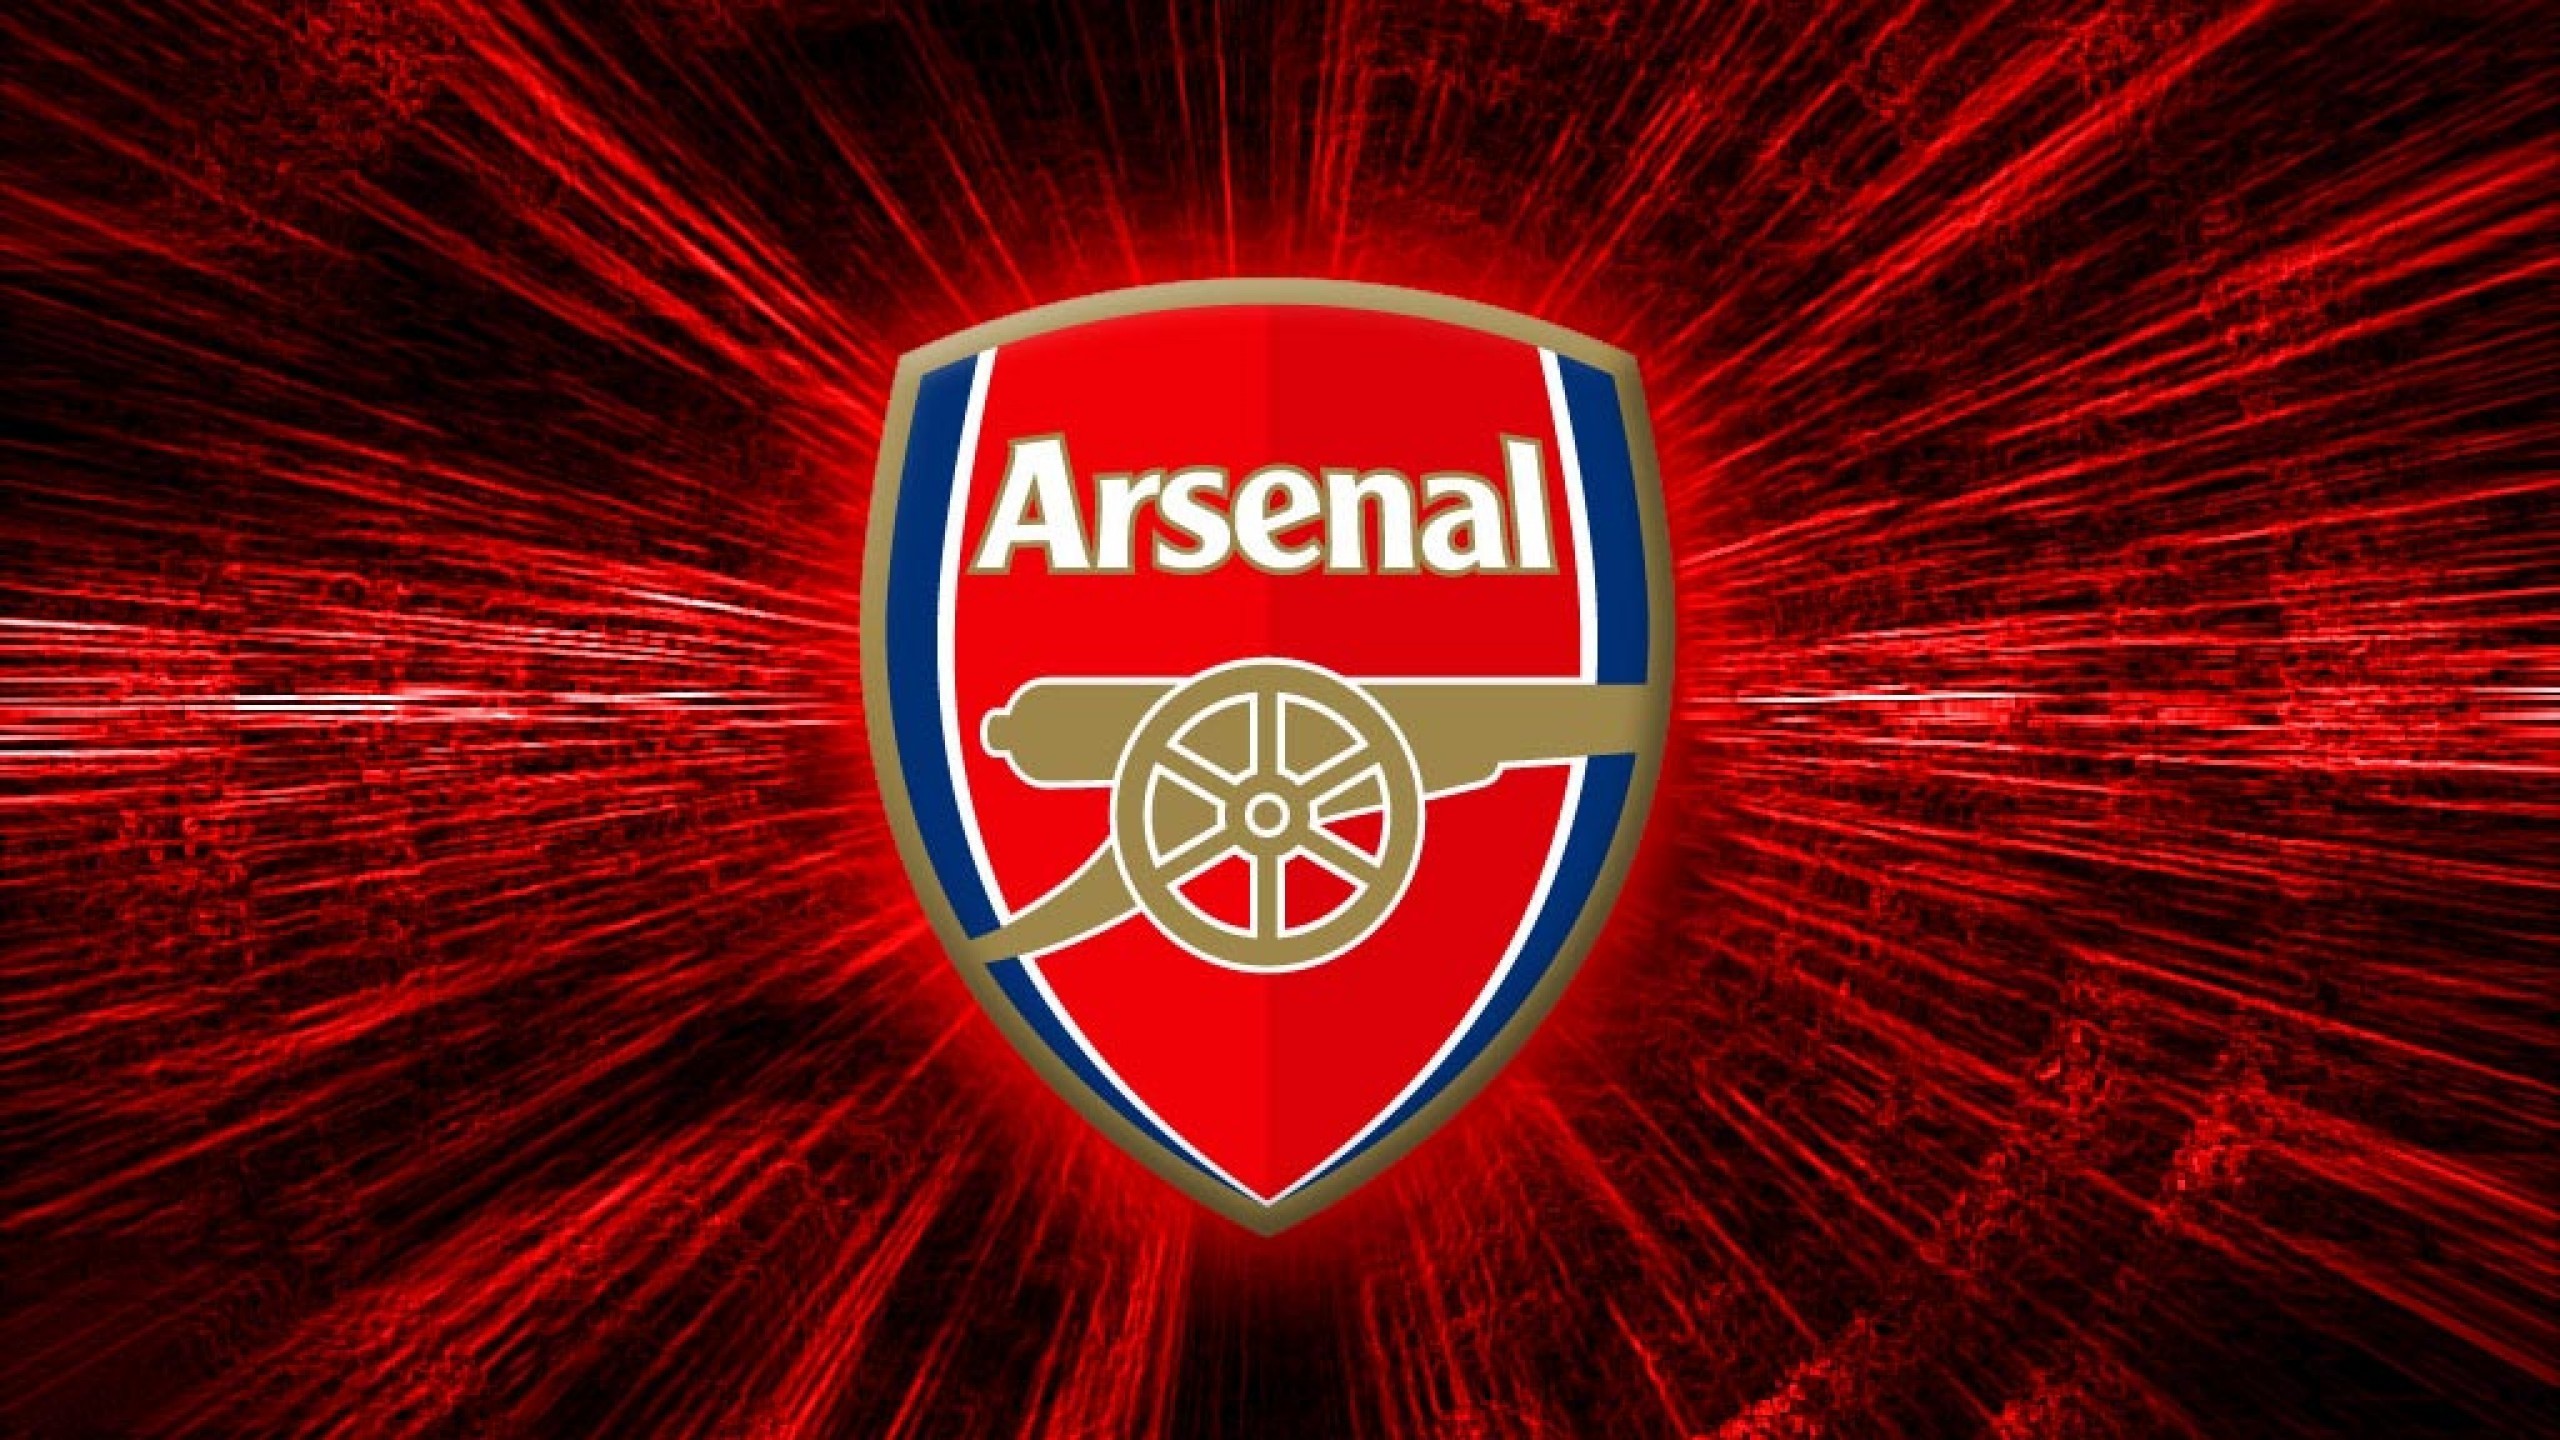 2560x1440 Arsenal Logo Wallpaper 2018 78 Images